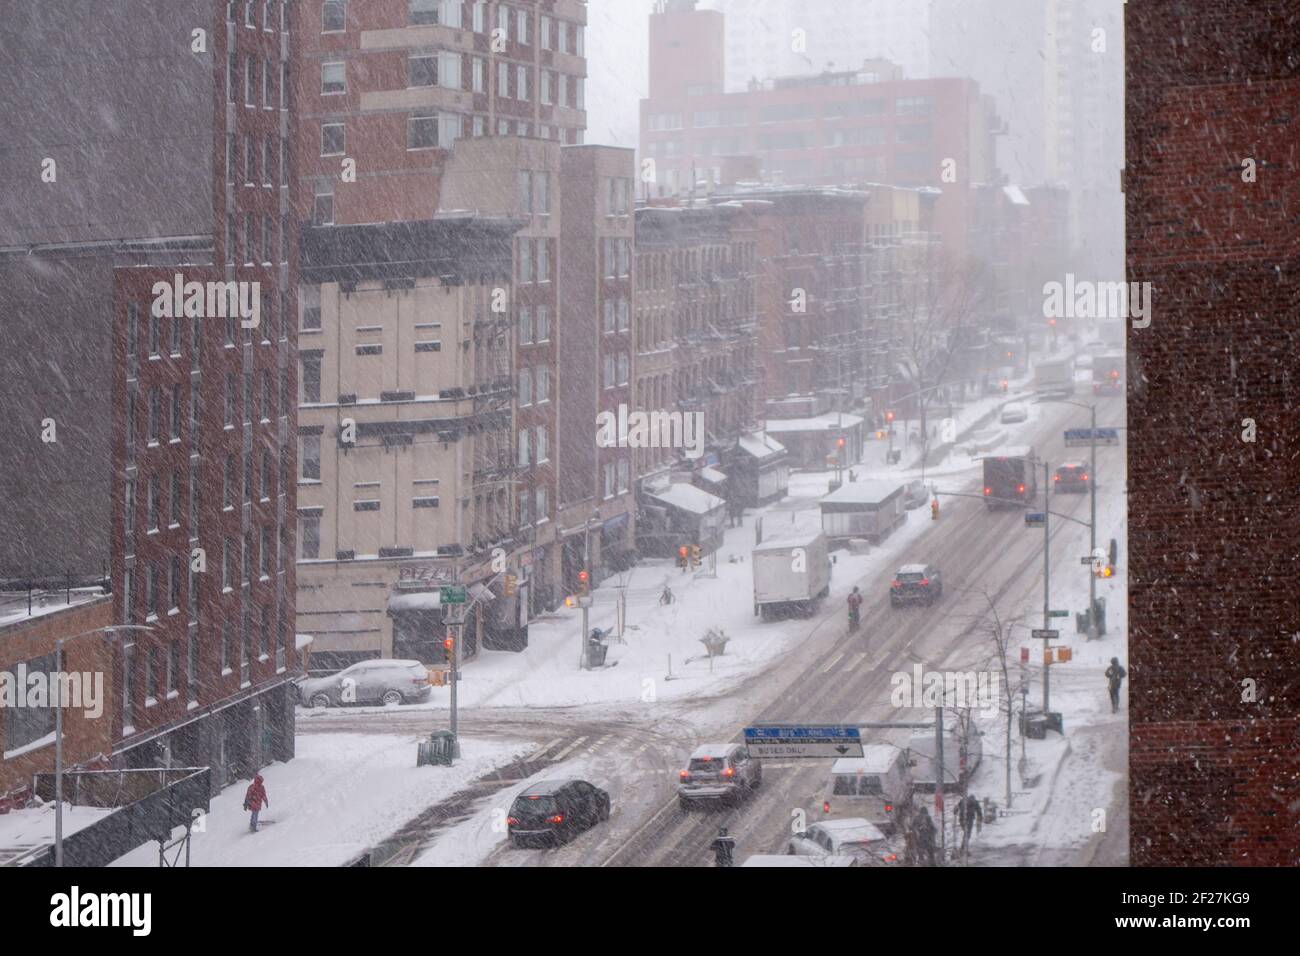 Noël blanc hiver neige jour dans la grande pomme nouveau york City manhattan bâtiments rues et passerelles intersection angle élevé Banque D'Images